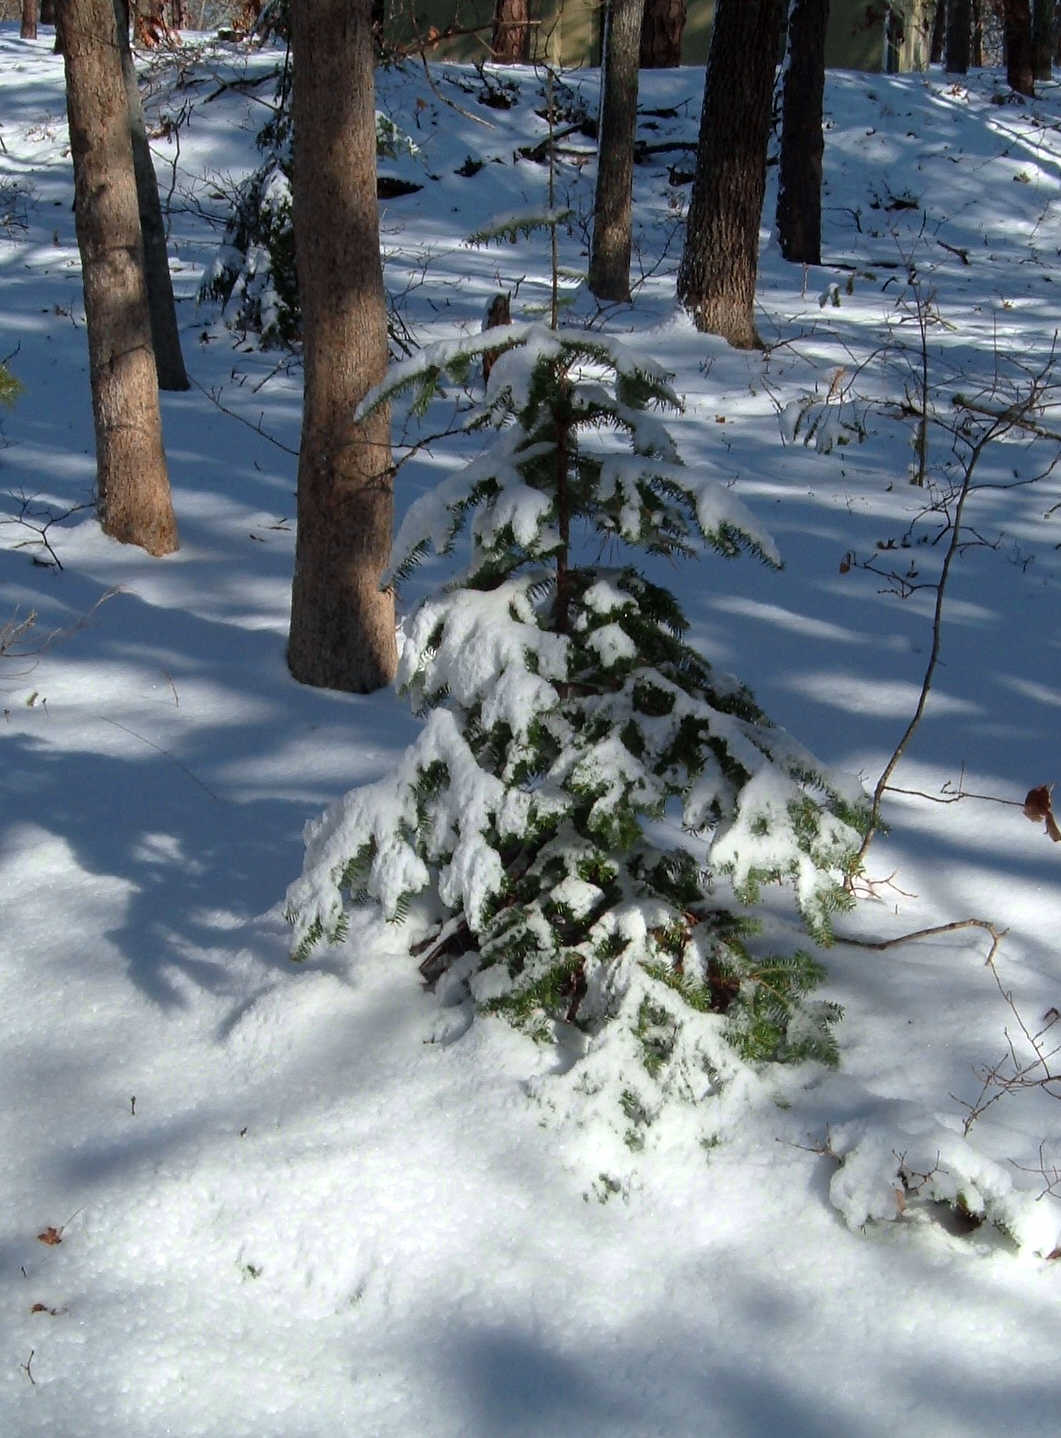 [Little+Tree+in+the+Snowy+Woods.jpg]